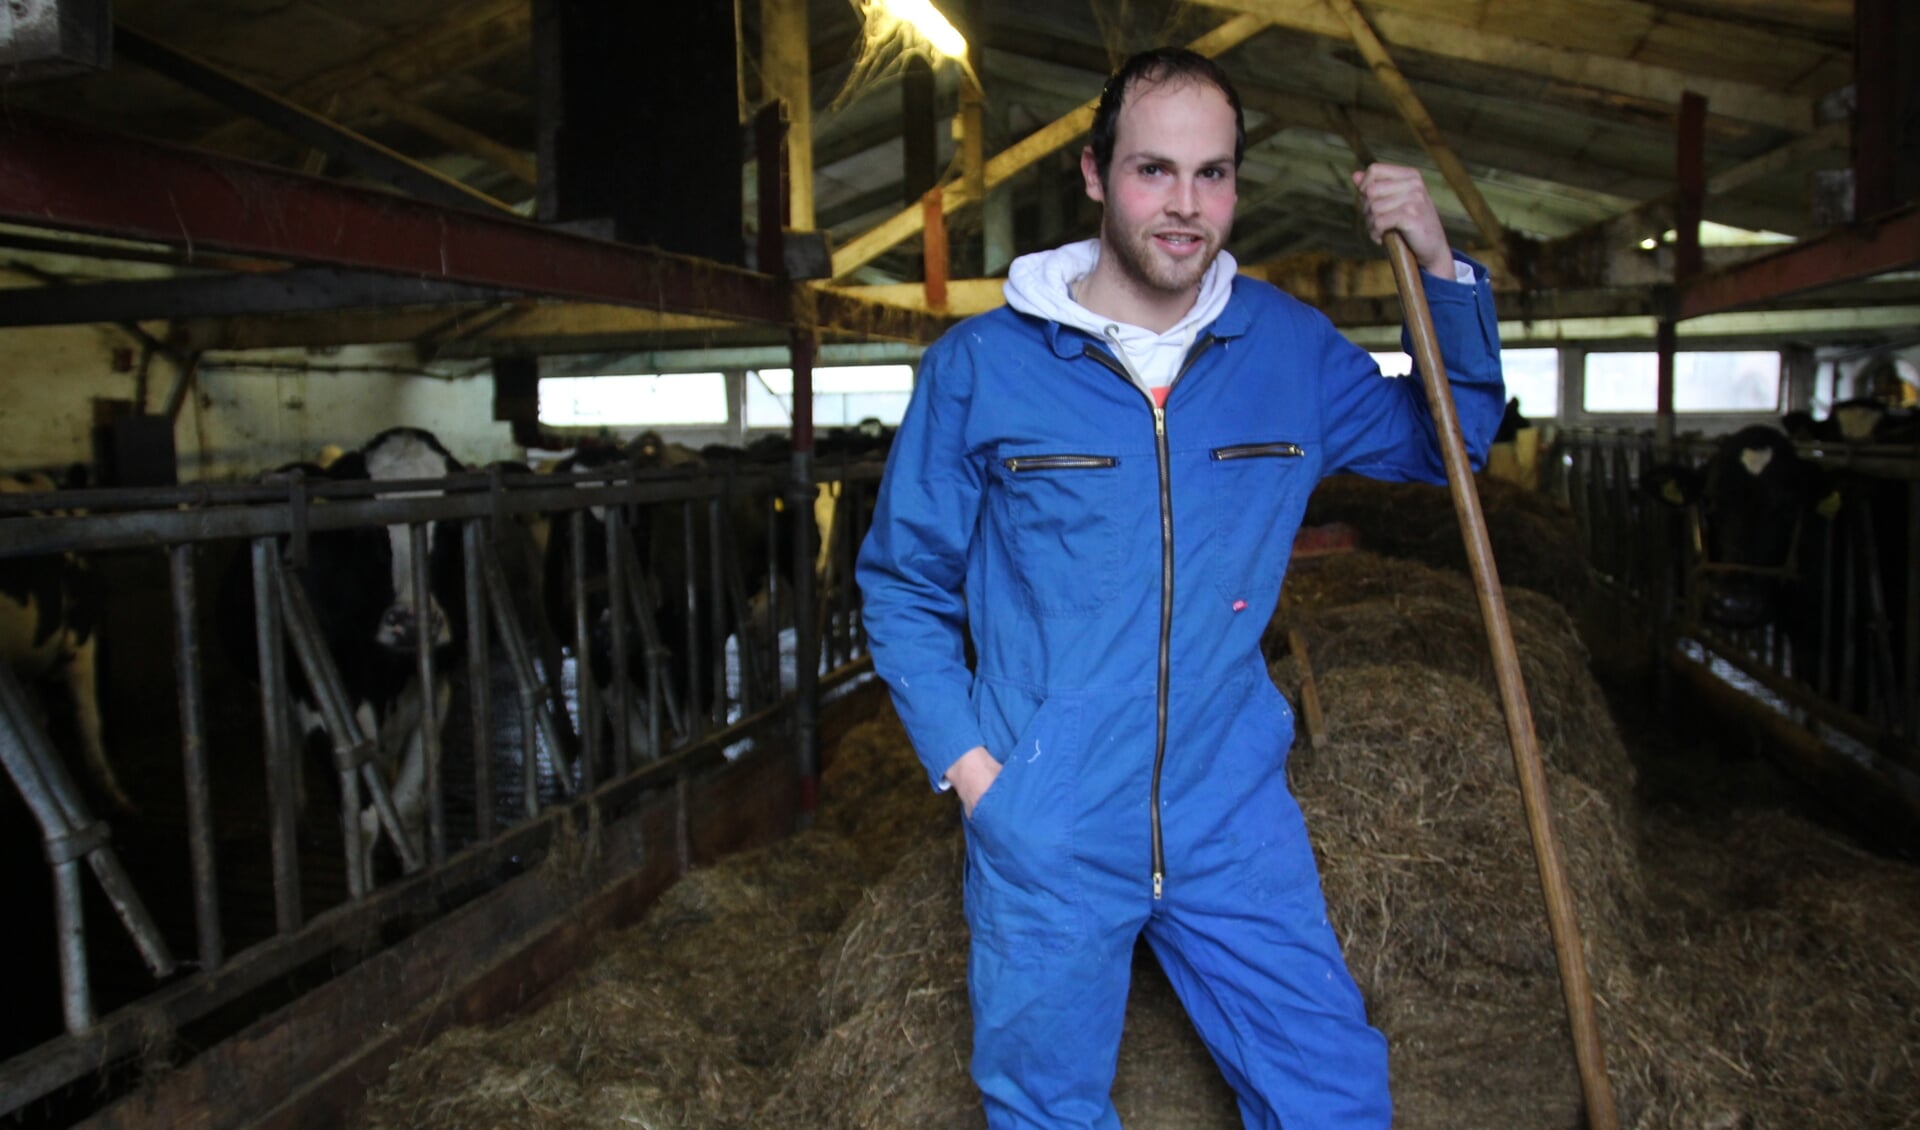 Luke wil een moderne stal bouwen en de melk van de koeien gaan verzuivelen tot kaas, boter en andere zuivelproducten. 